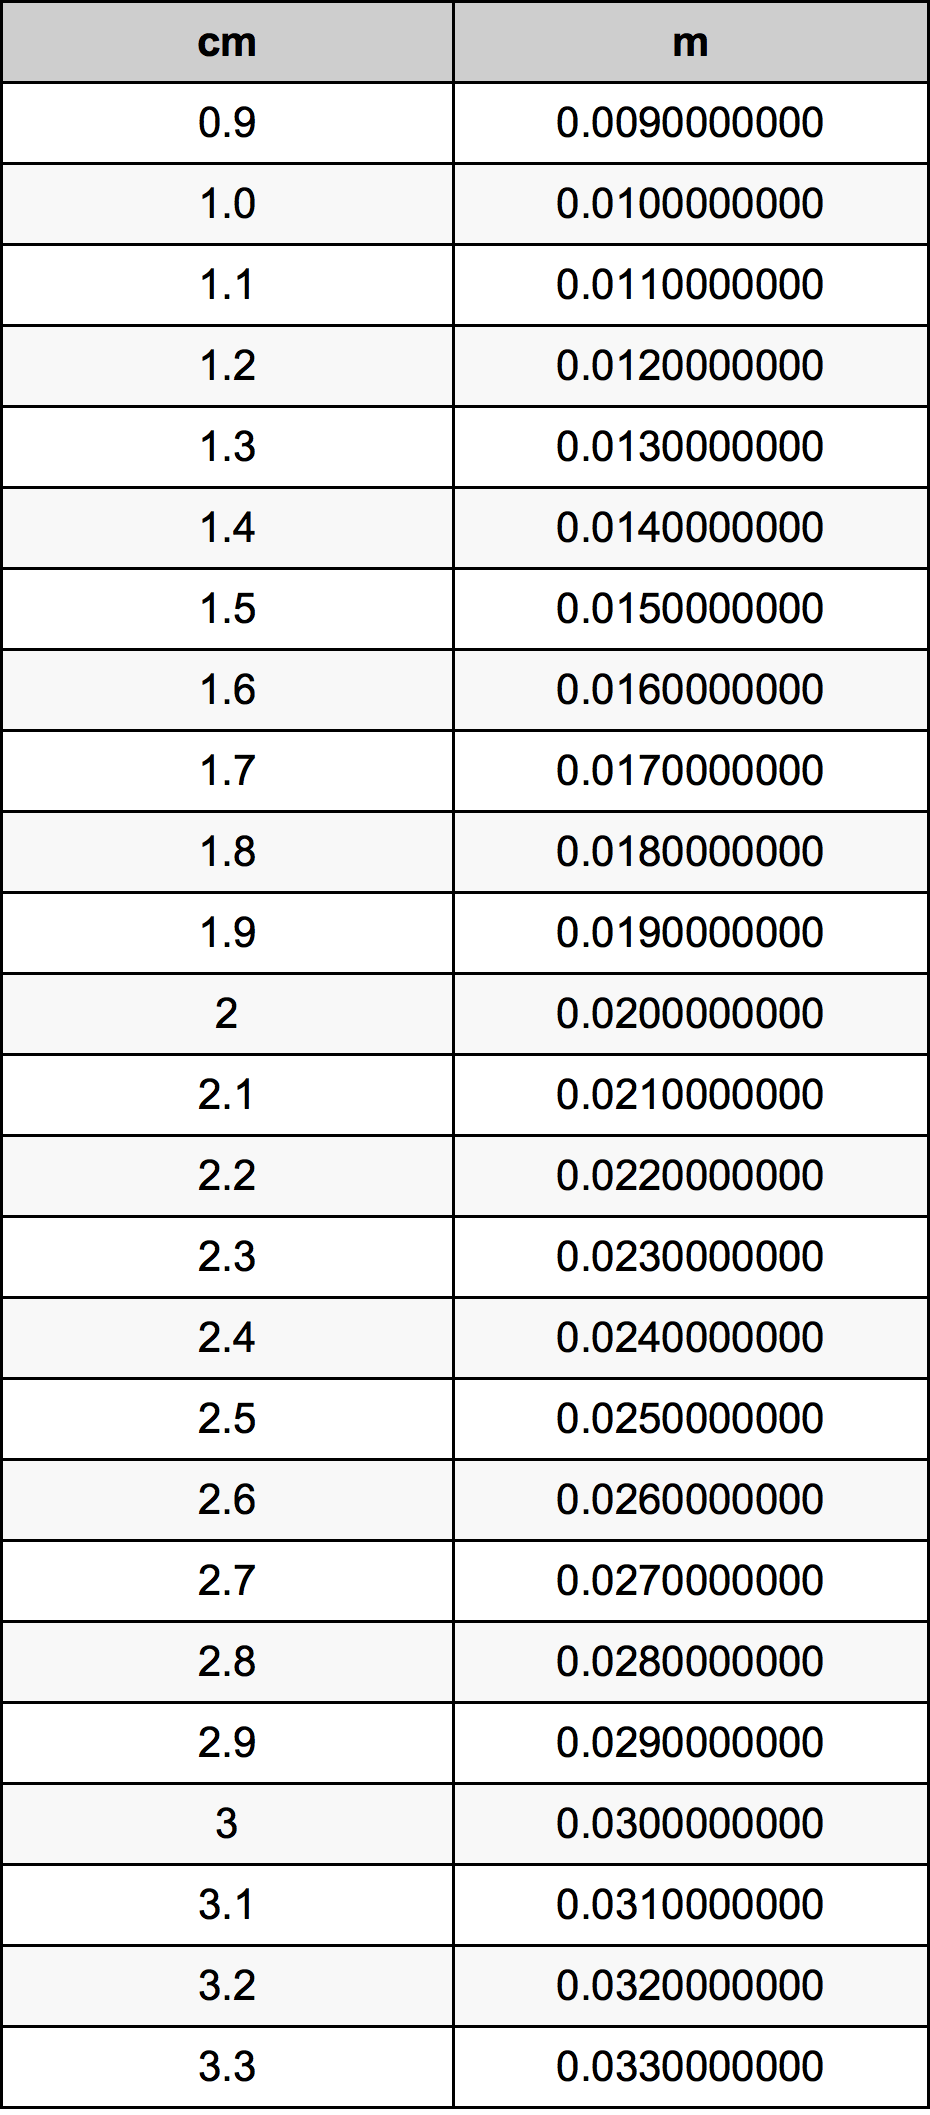 2.1 Centiméter átszámítási táblázat